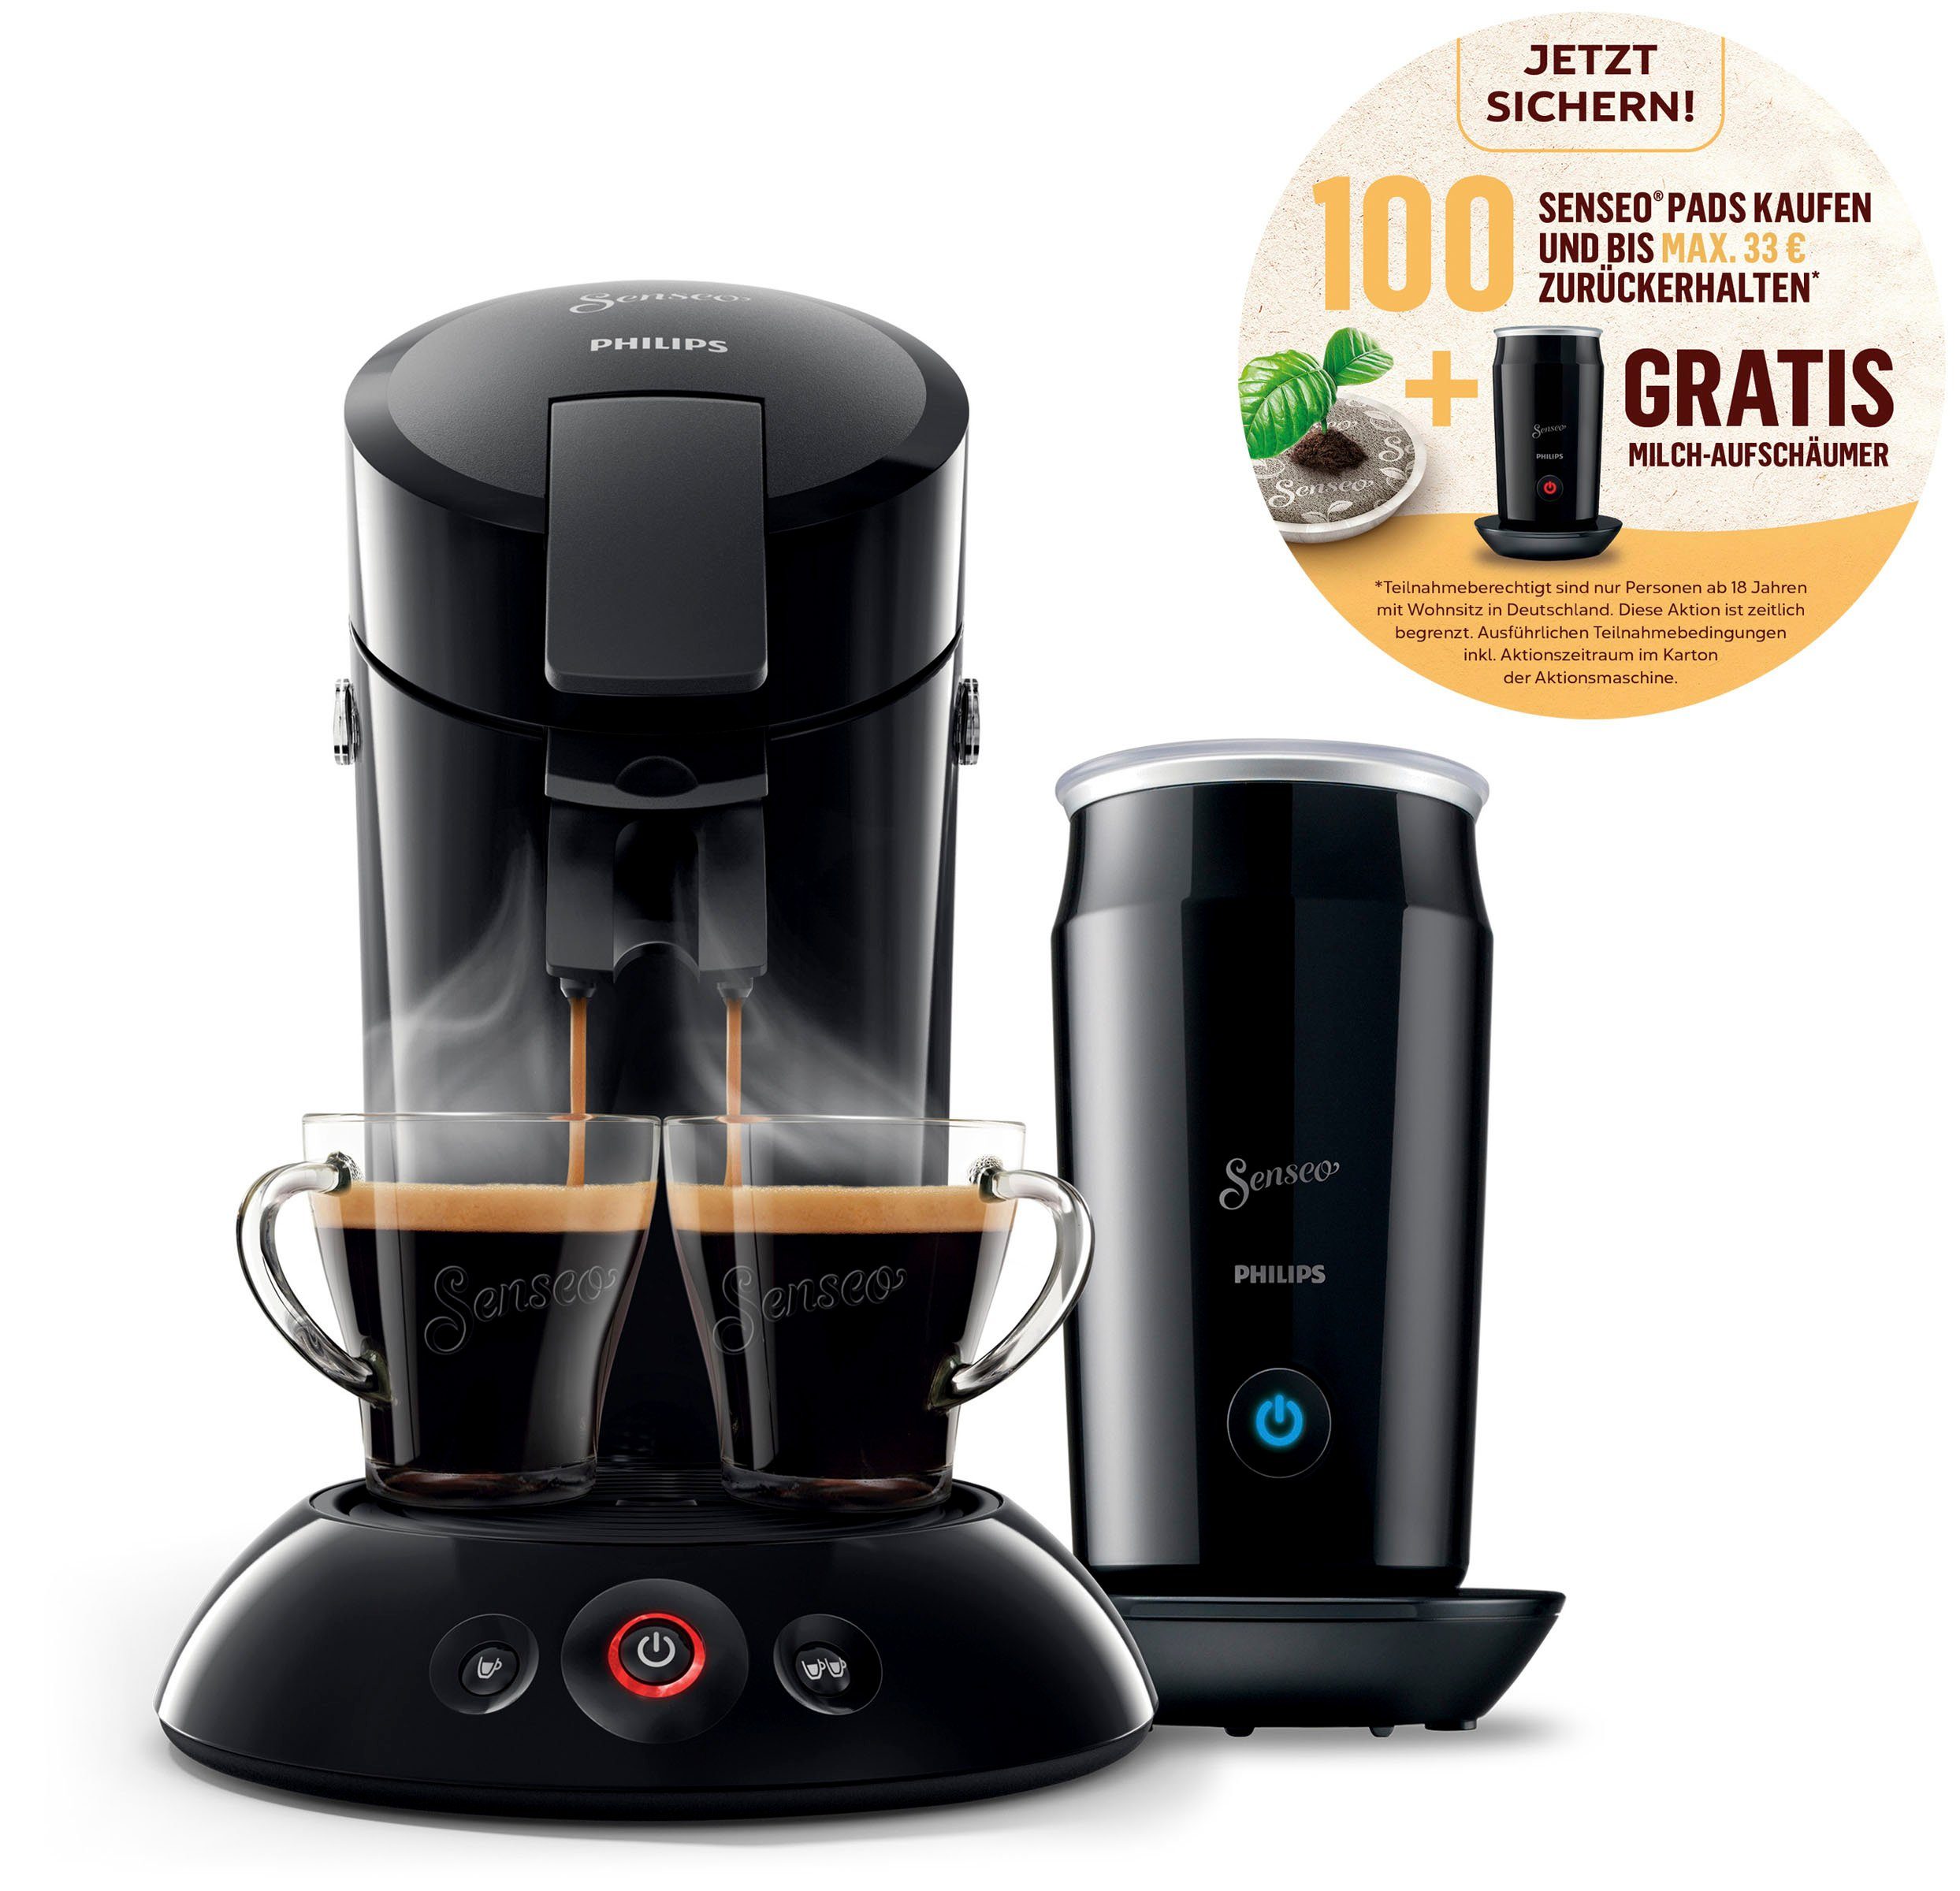 Philips Senseo Kaffeepadmaschine Senseo Original HD6553/65, inkl.  Milchaufschäumer im Wert von 79,99 UVP, 100 Senseo Pads kaufen und bis  max.33 € zurückerhalten online kaufen | OTTO